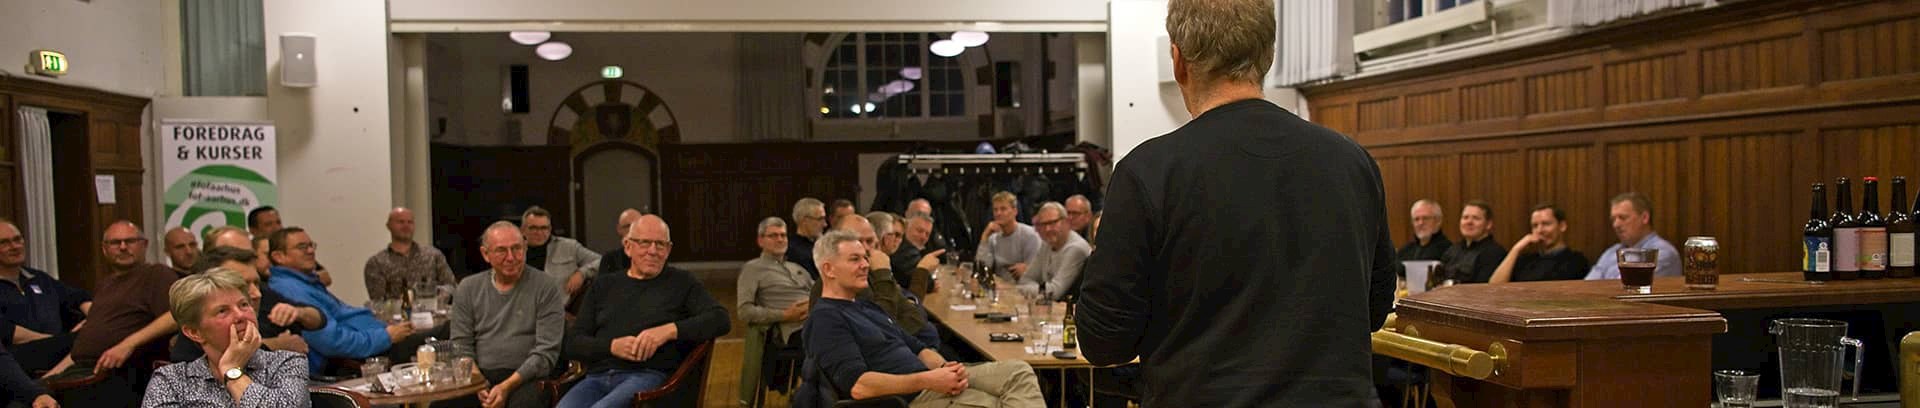 Ølsmagning i FOF Aarhus med ekspert Torben Mathews.